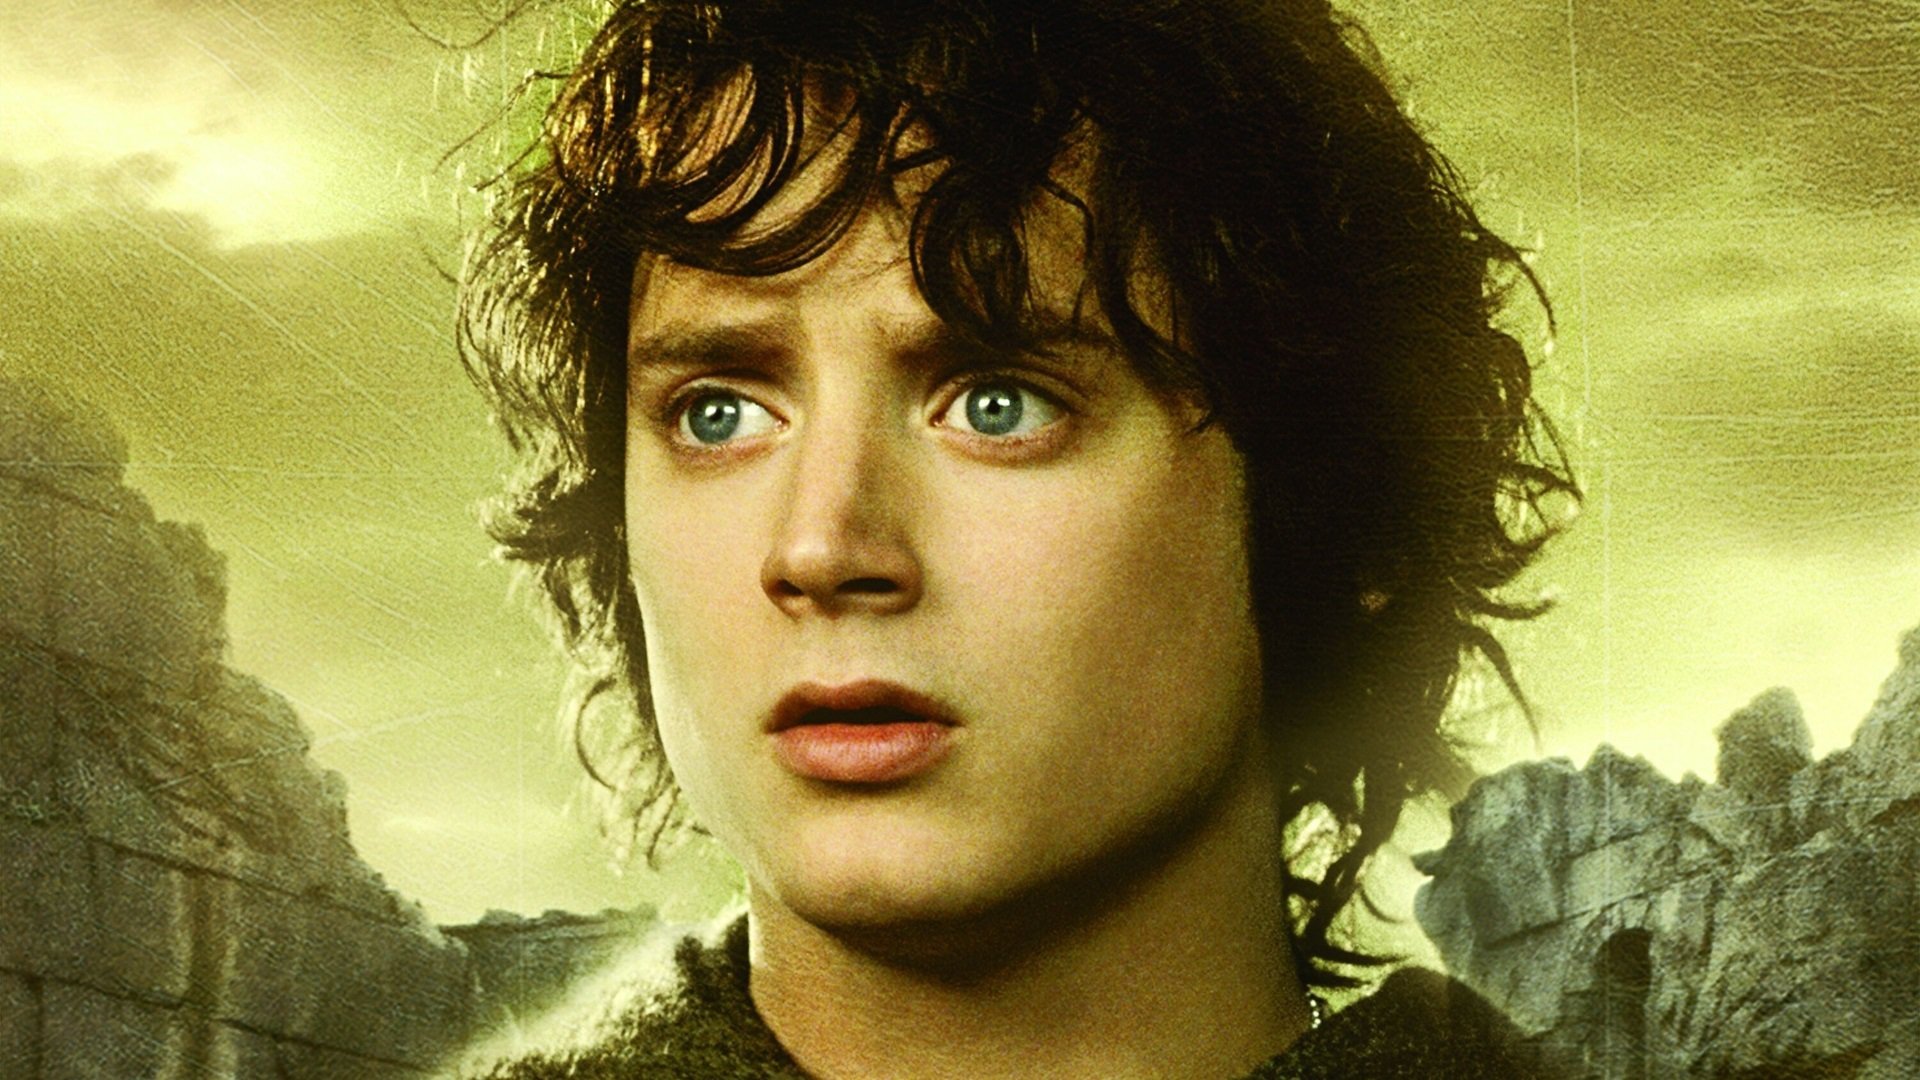 Властелин колец выпуск. Хоббит Фродо. Властелин колец Фродо. Фродо Бэггинс Властелин колец. Властелин колец братство кольца Фродо.